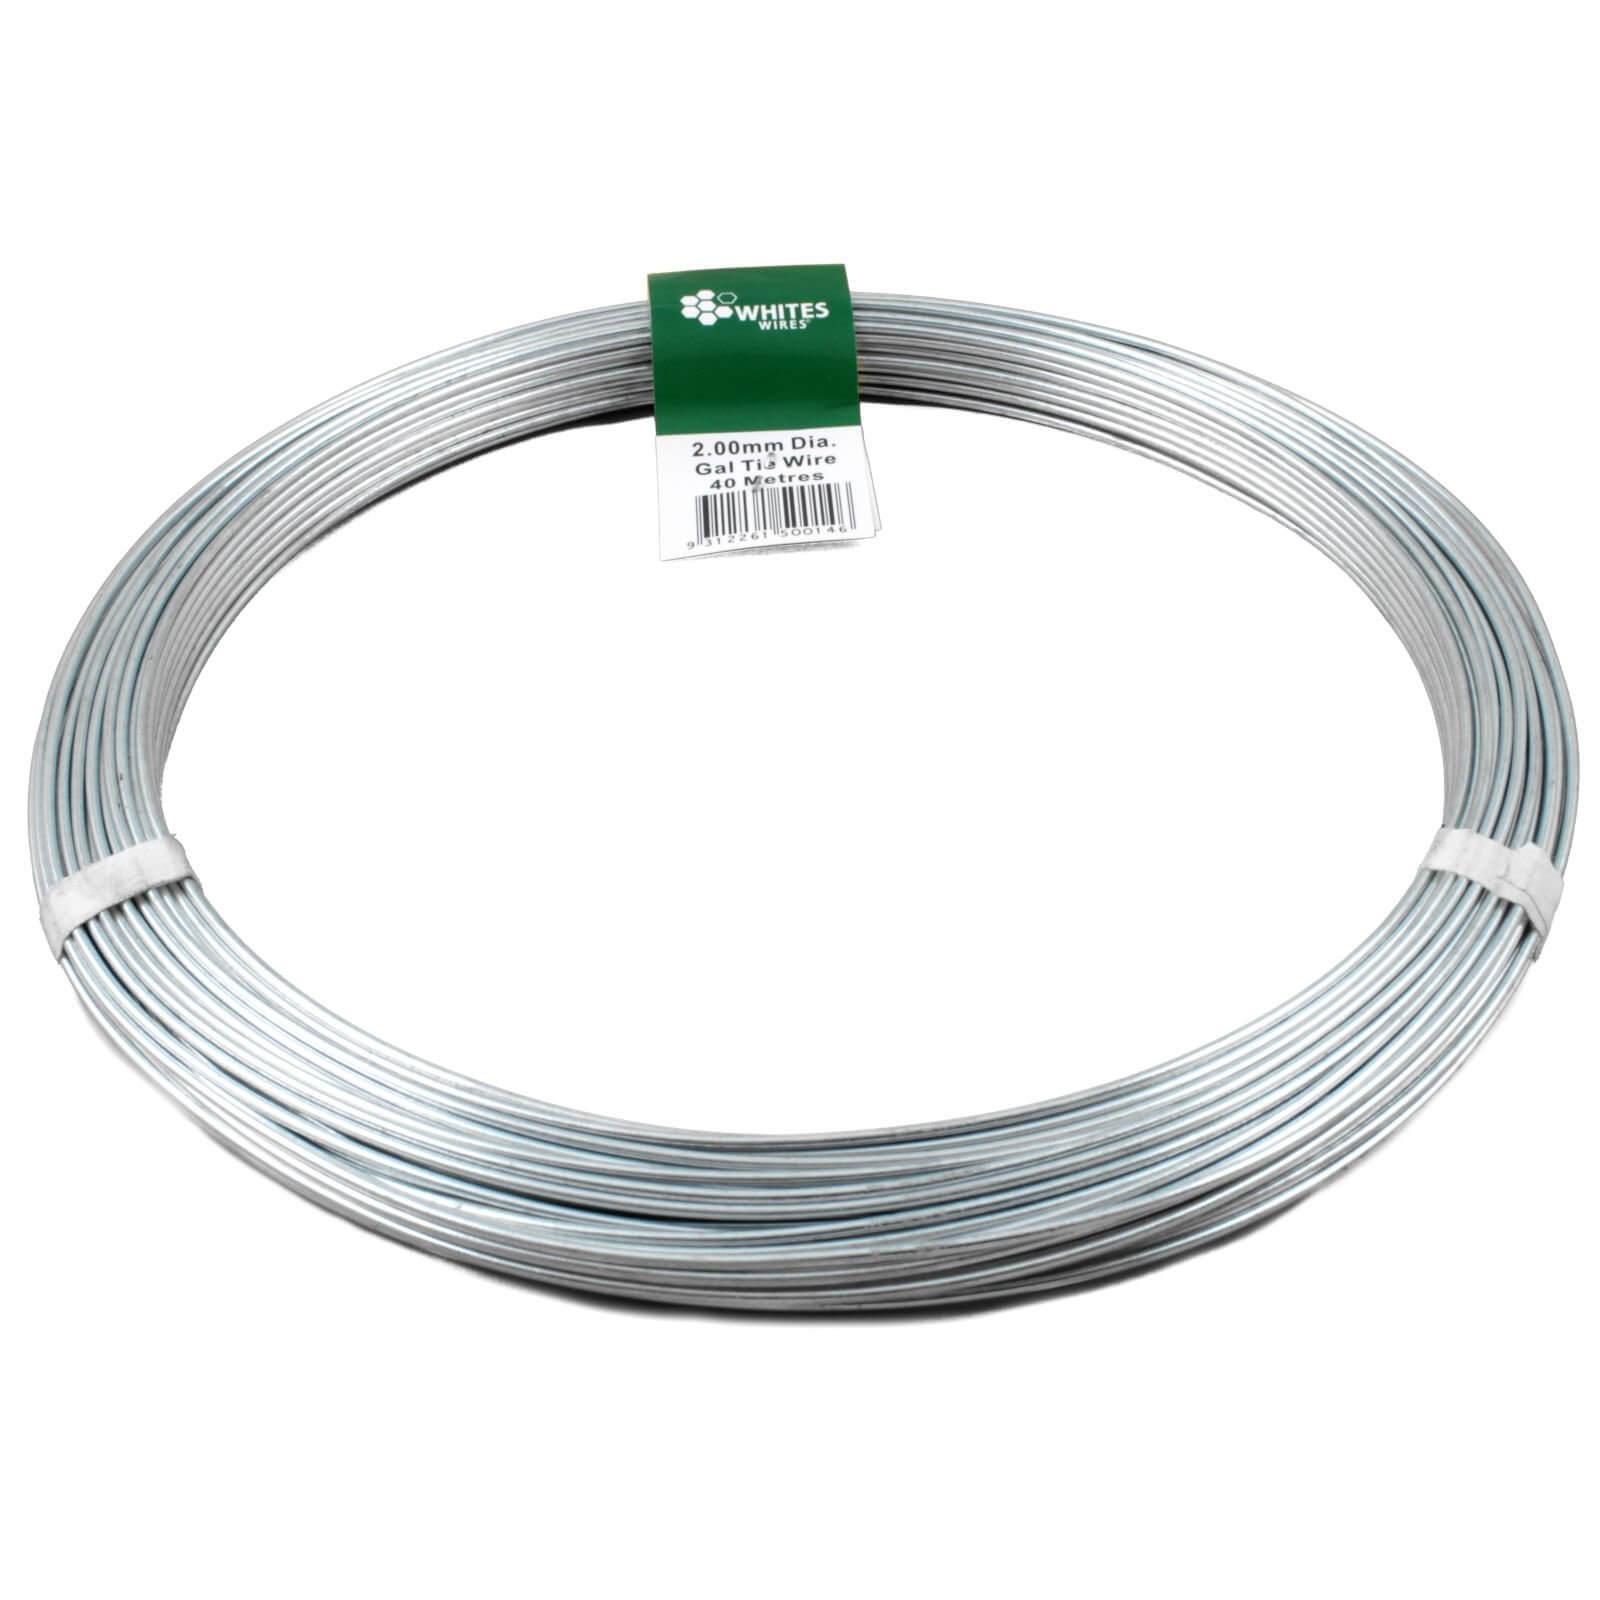 Whites Steel Tie Wire - 40m x 2mm